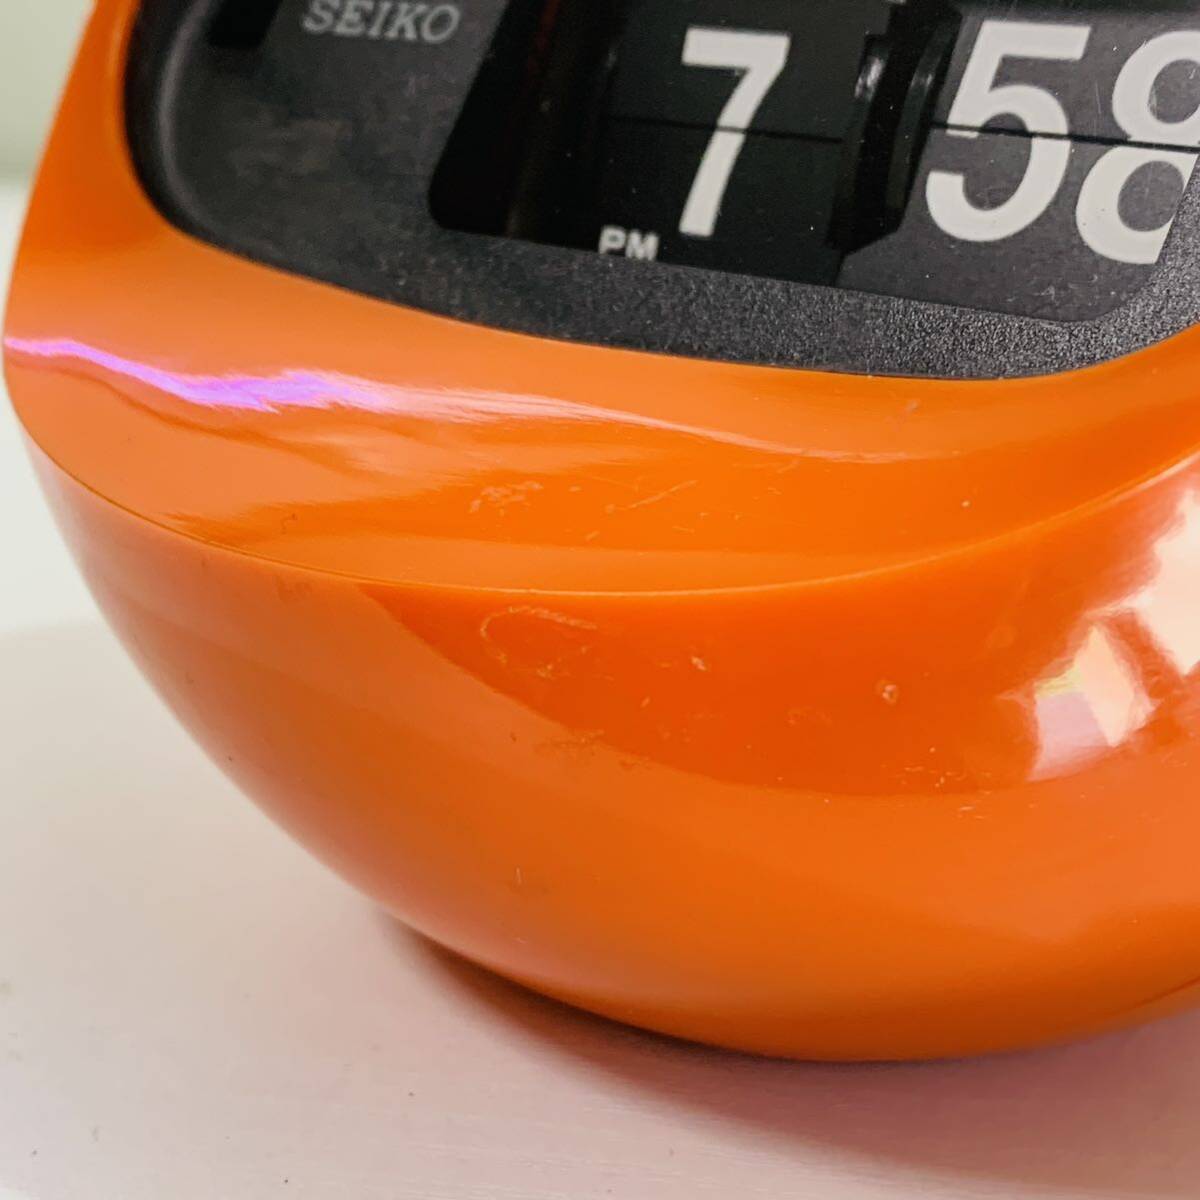 SEIKO セイコー デジタル時計 SD-506 パタパタ時計 オレンジ 球形 ラウンド 置時計 60Hz 昭和レトロ アンティーク ビンテージ 動作確認済_画像7